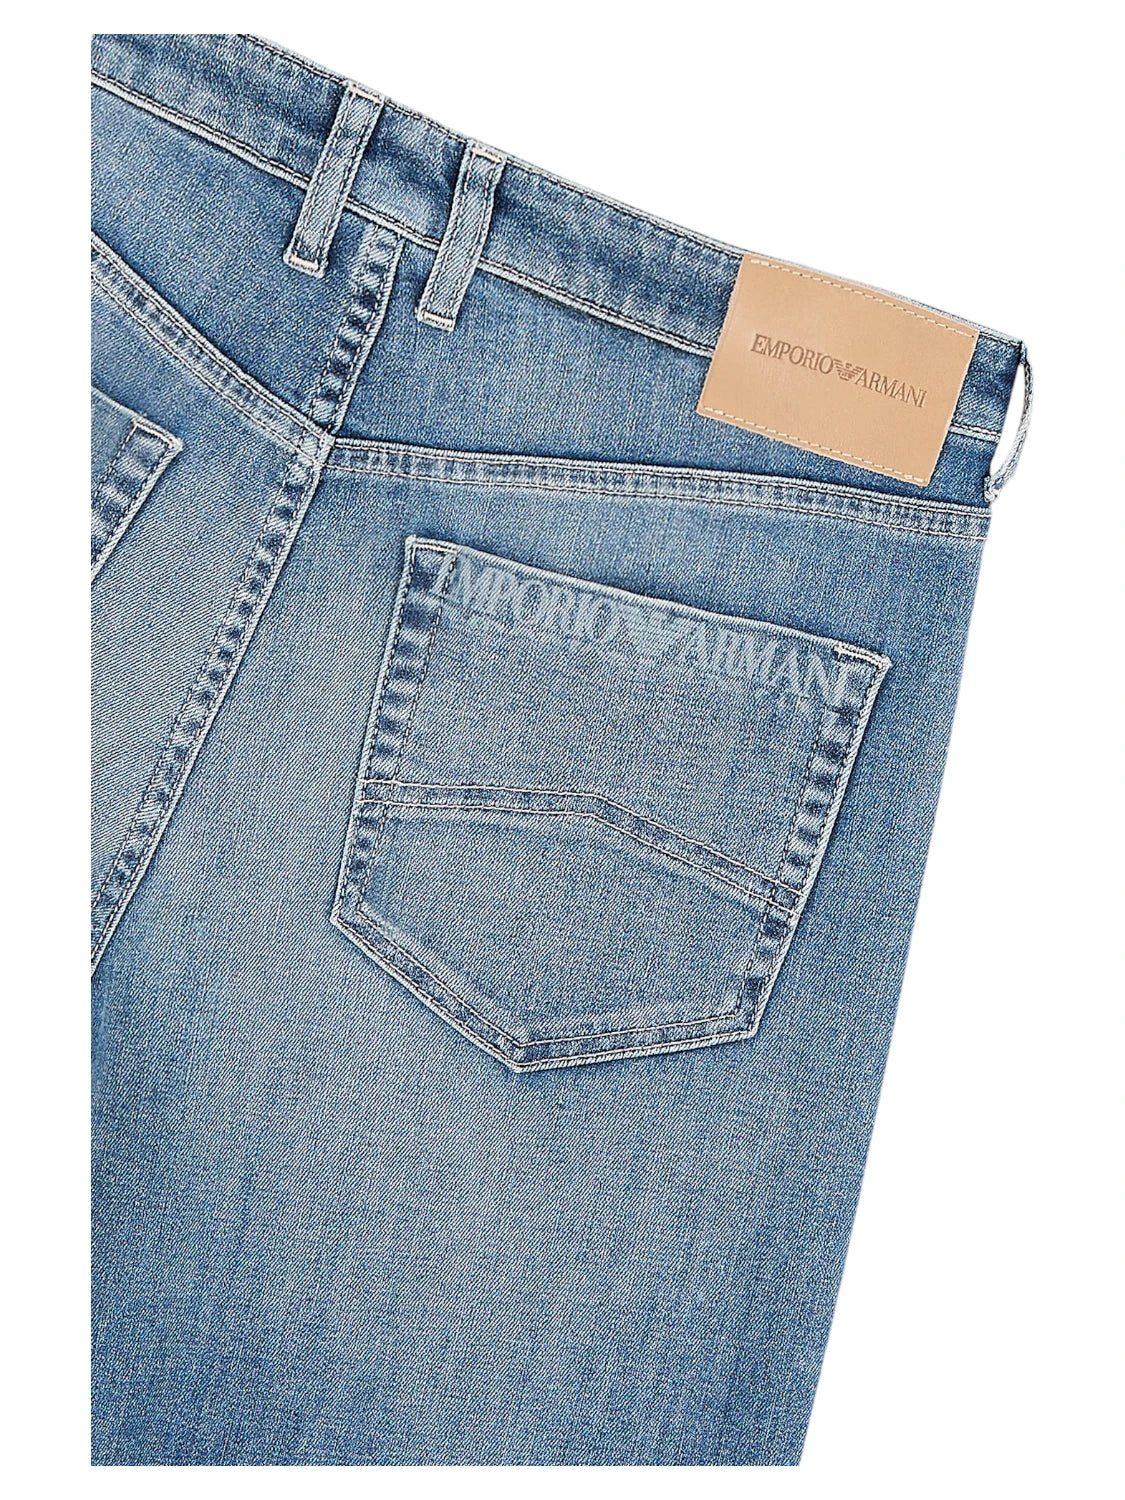 Jeans J90 a Vita Media e Taglio Relaxed-Emporio Armani-Jeans-Vittorio Citro Boutique